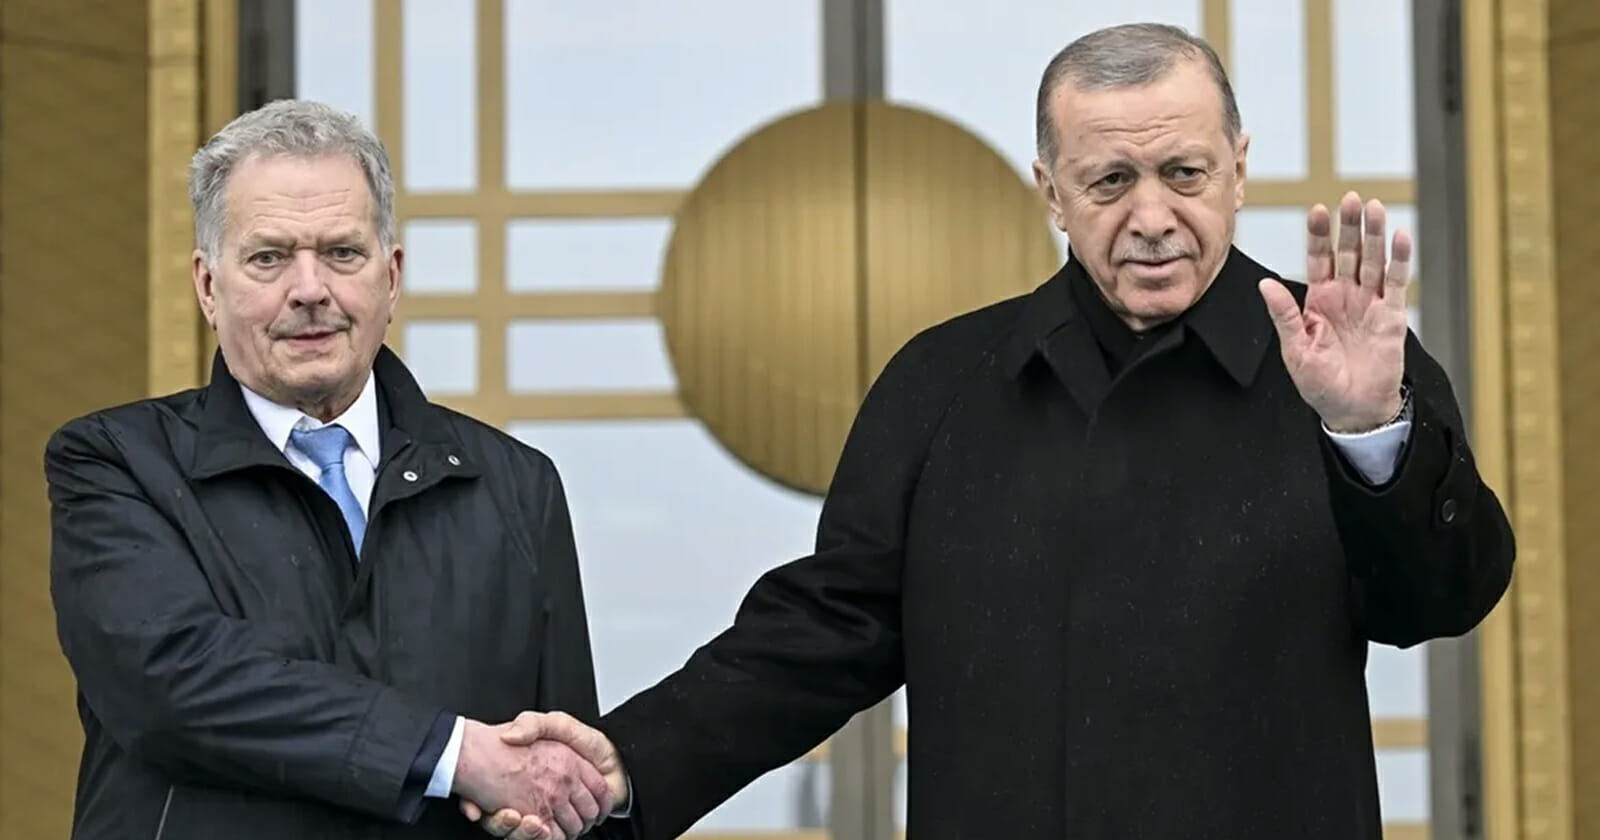 الرئيس التركي رجب طيب أردوغان watanserb.com